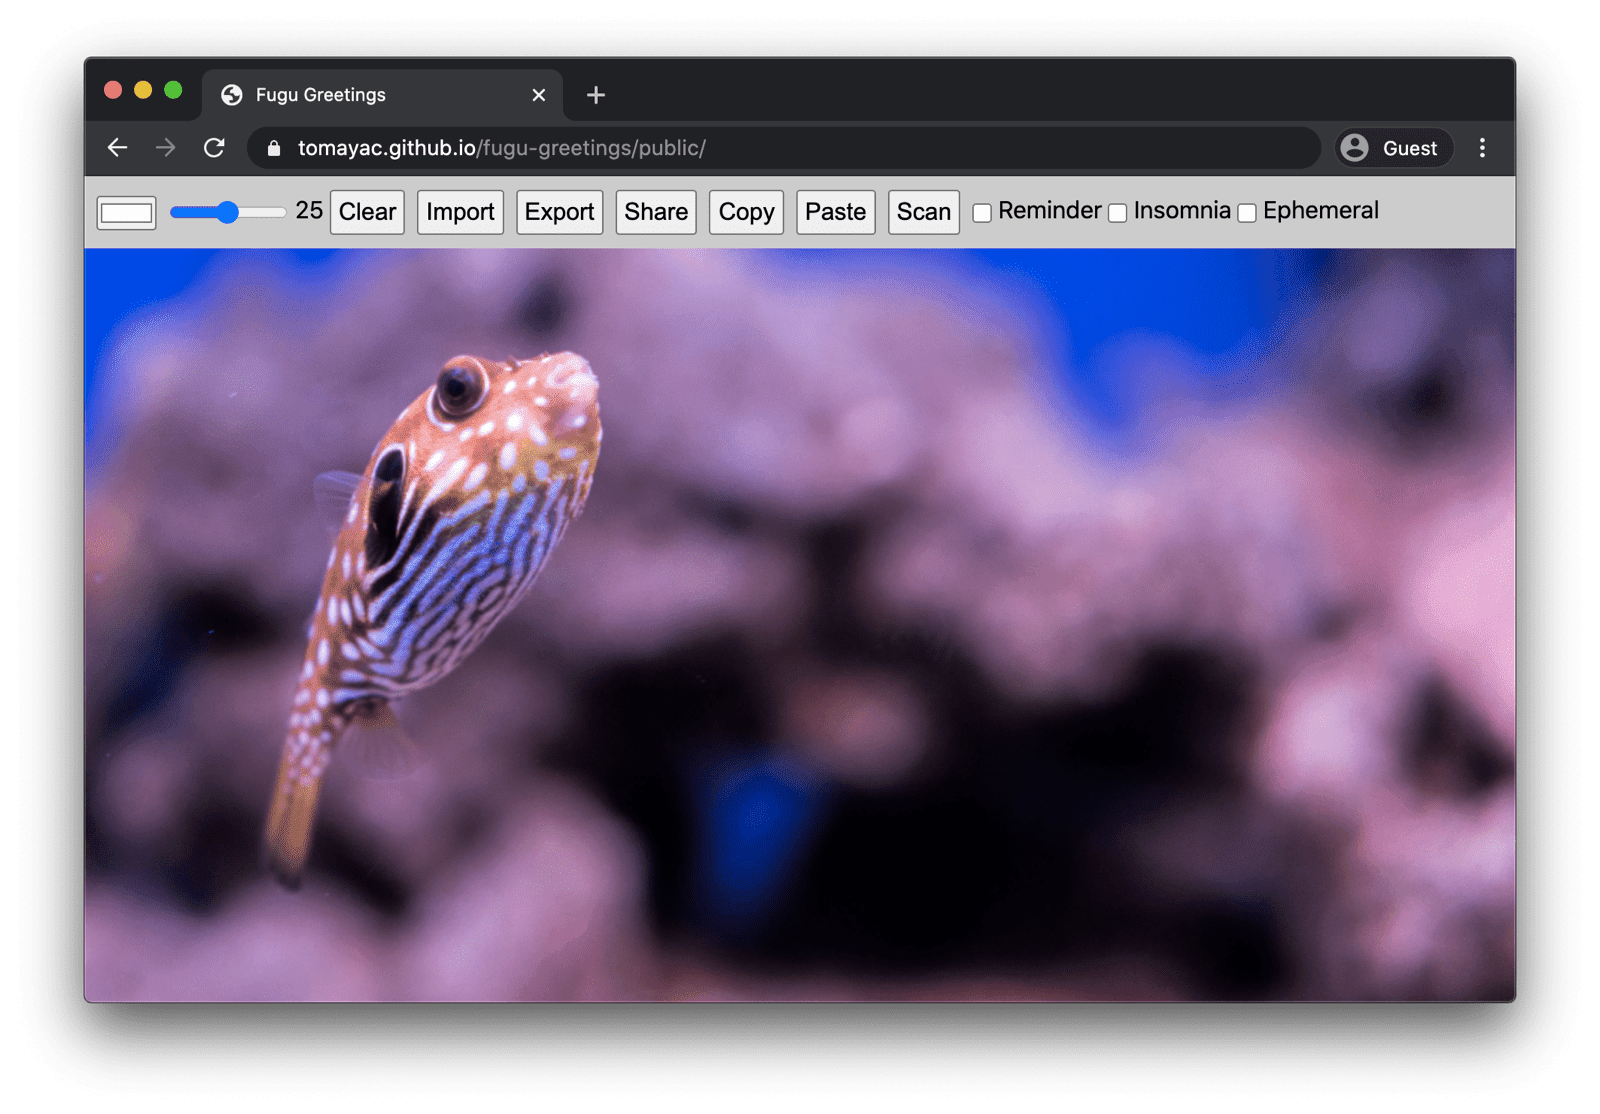 在桌面版 Chrome 上运行的 Fugu Greetings 画面，显示了许多可用功能。